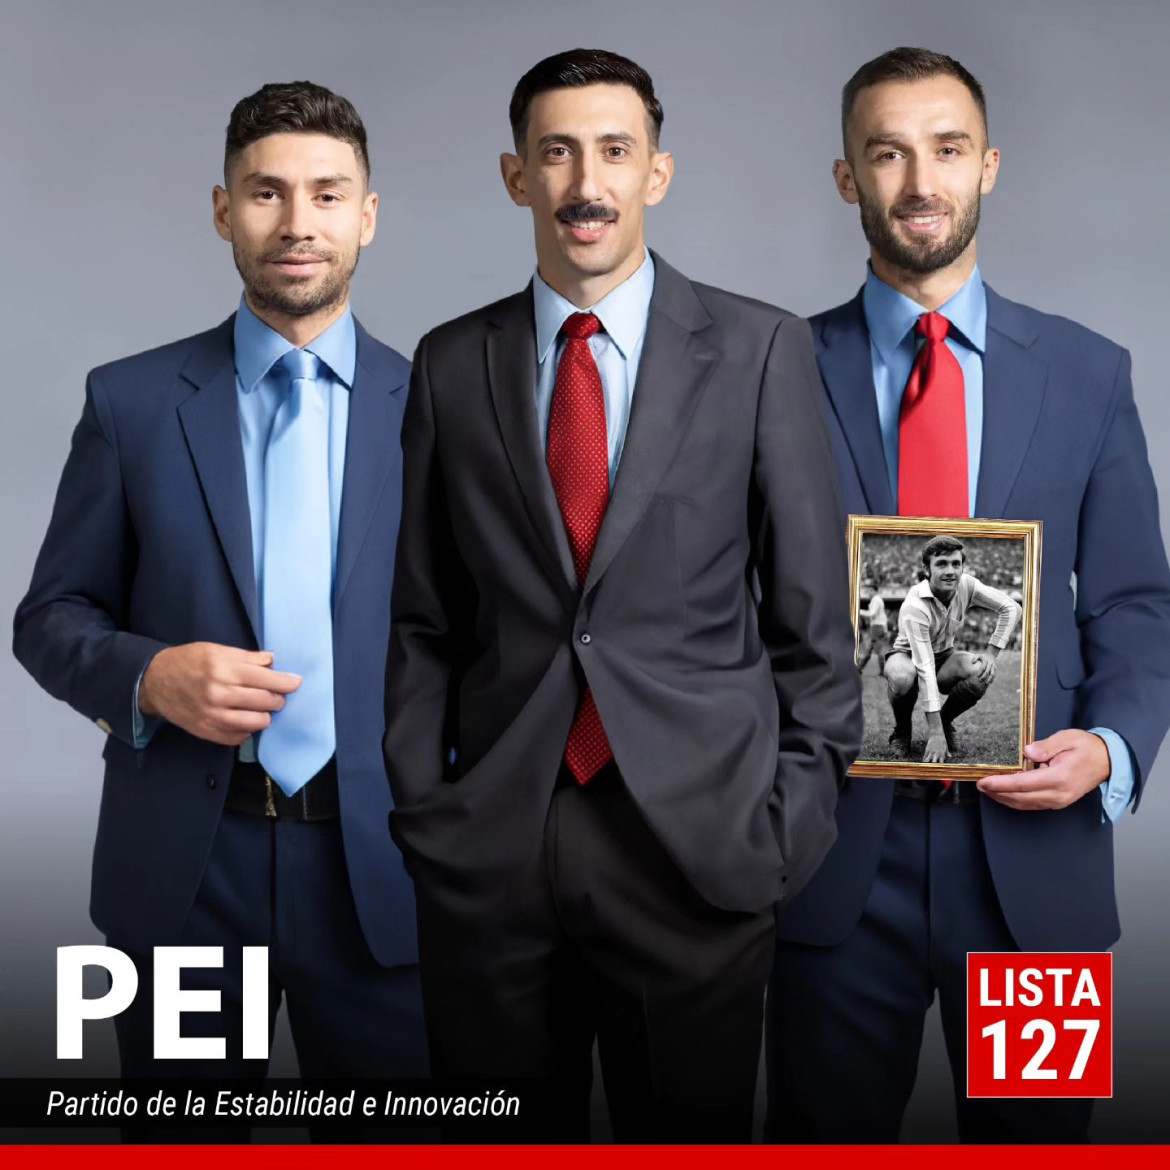 Ángel Di María, Gonzalo Montiel y Germán Pezzella conforman PEI. Foto: Instagram @ferdelucaok.